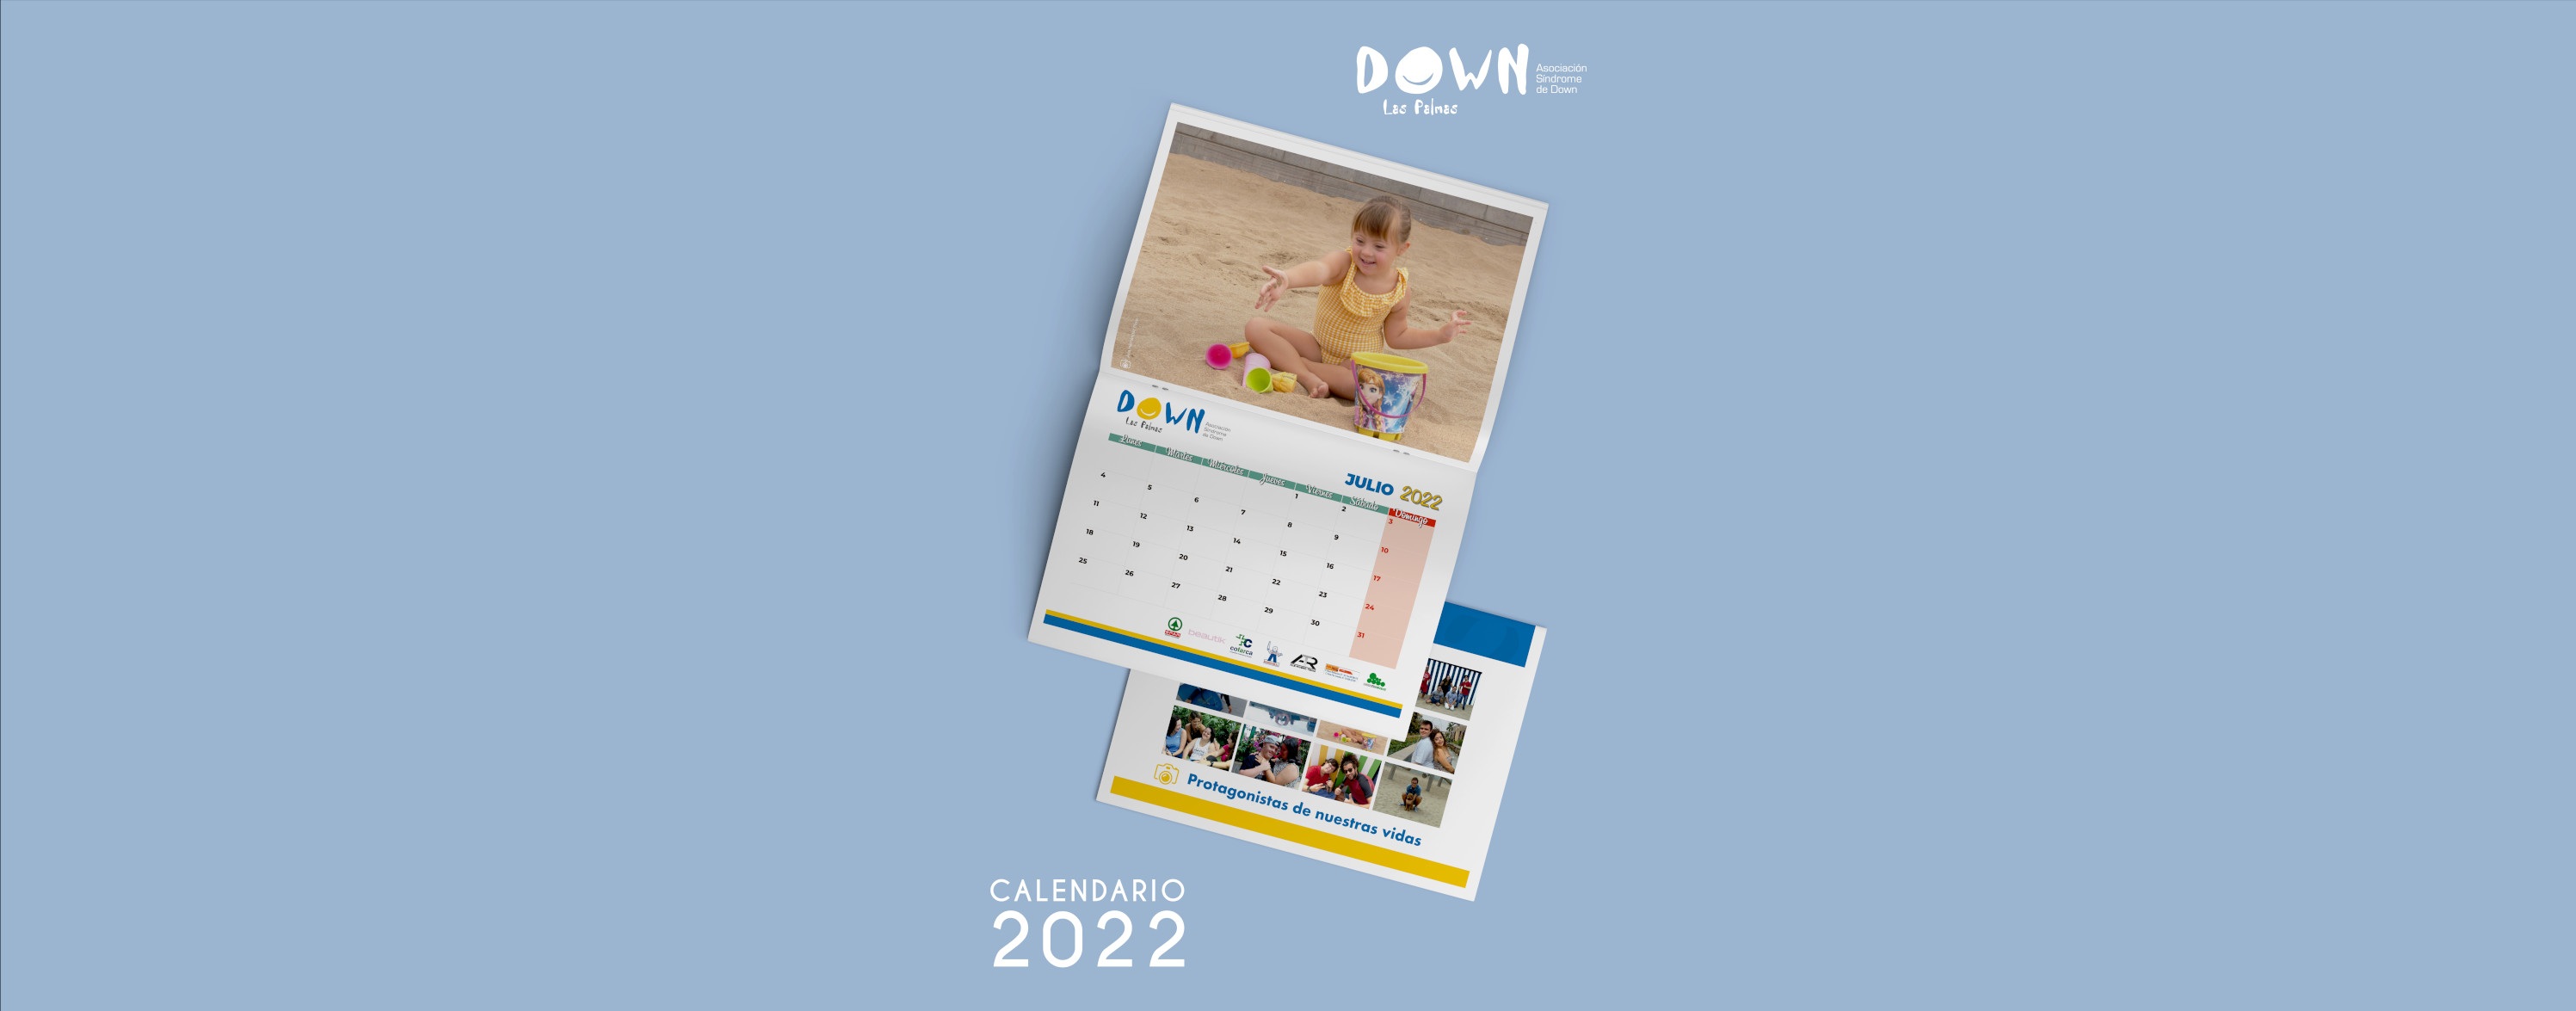 Nuevo calendario del 2022